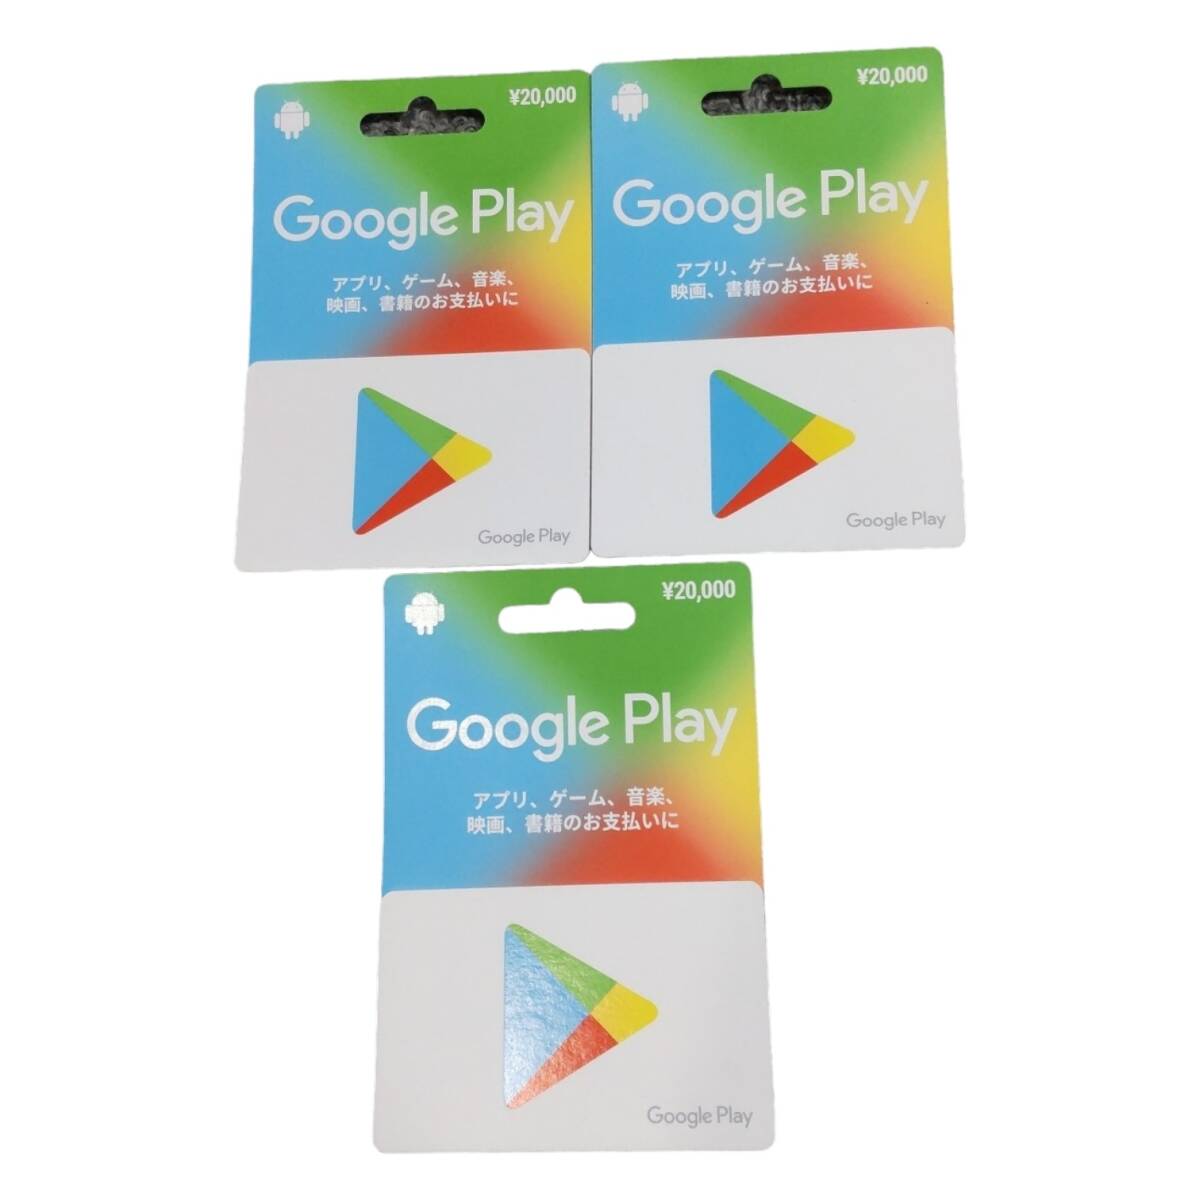 【未使用】Google Play Card グーグルプレイカード 20000円x3枚 合計: 60000円分 コード通知可 L4-277RFの画像1